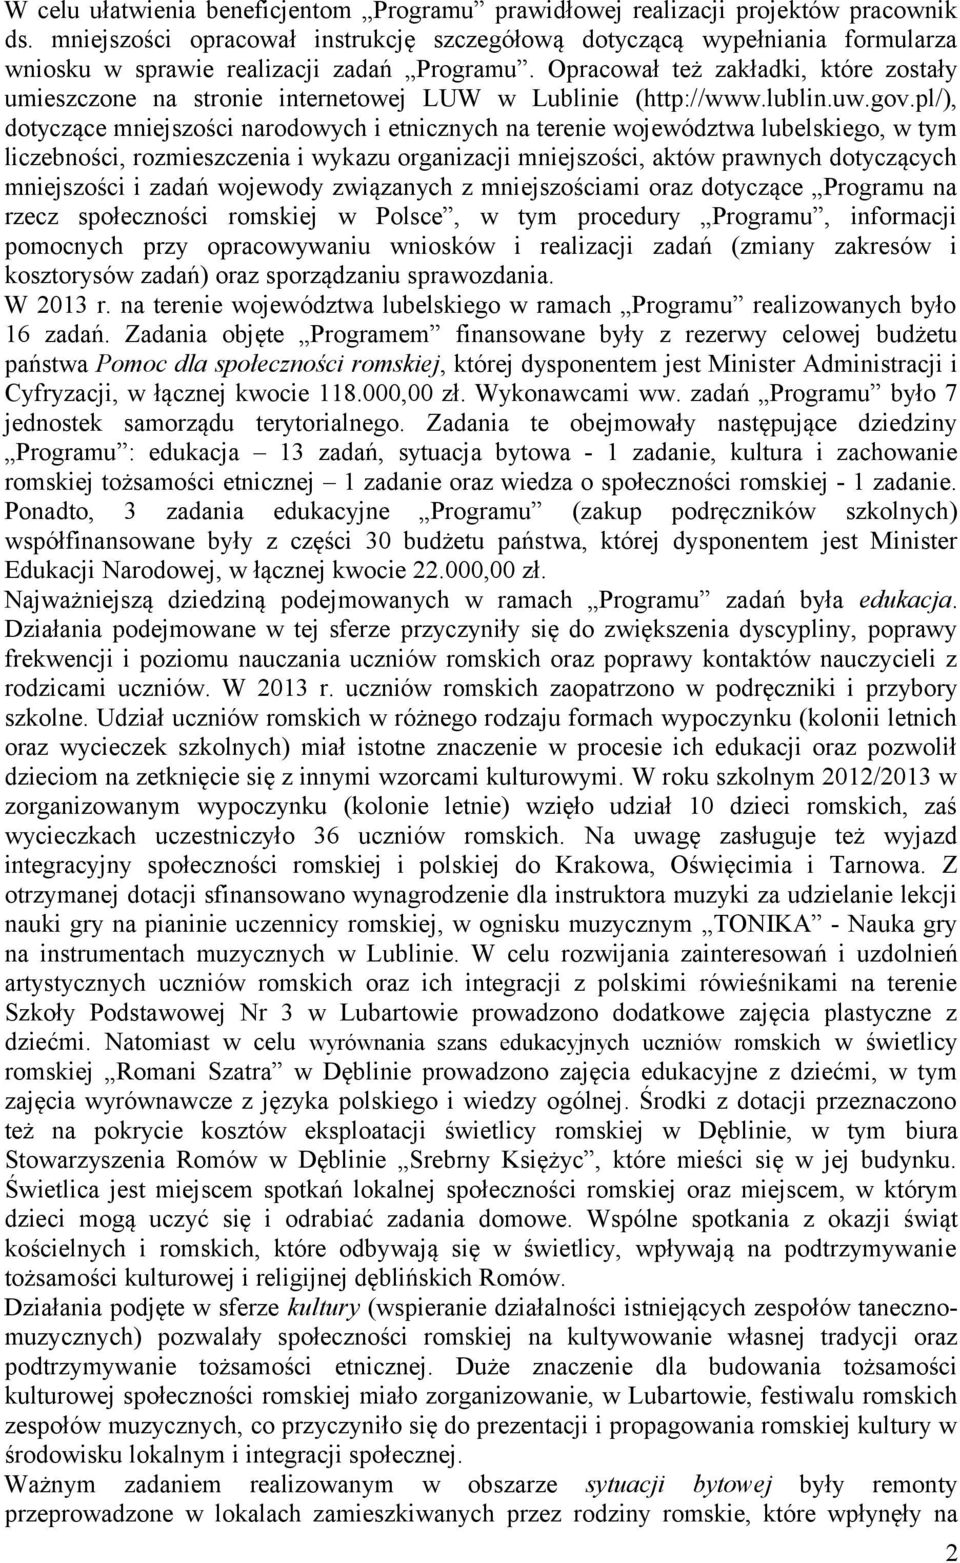 Opracował też zakładki, które zostały umieszczone na stronie internetowej LUW w Lublinie (http://www.lublin.uw.gov.